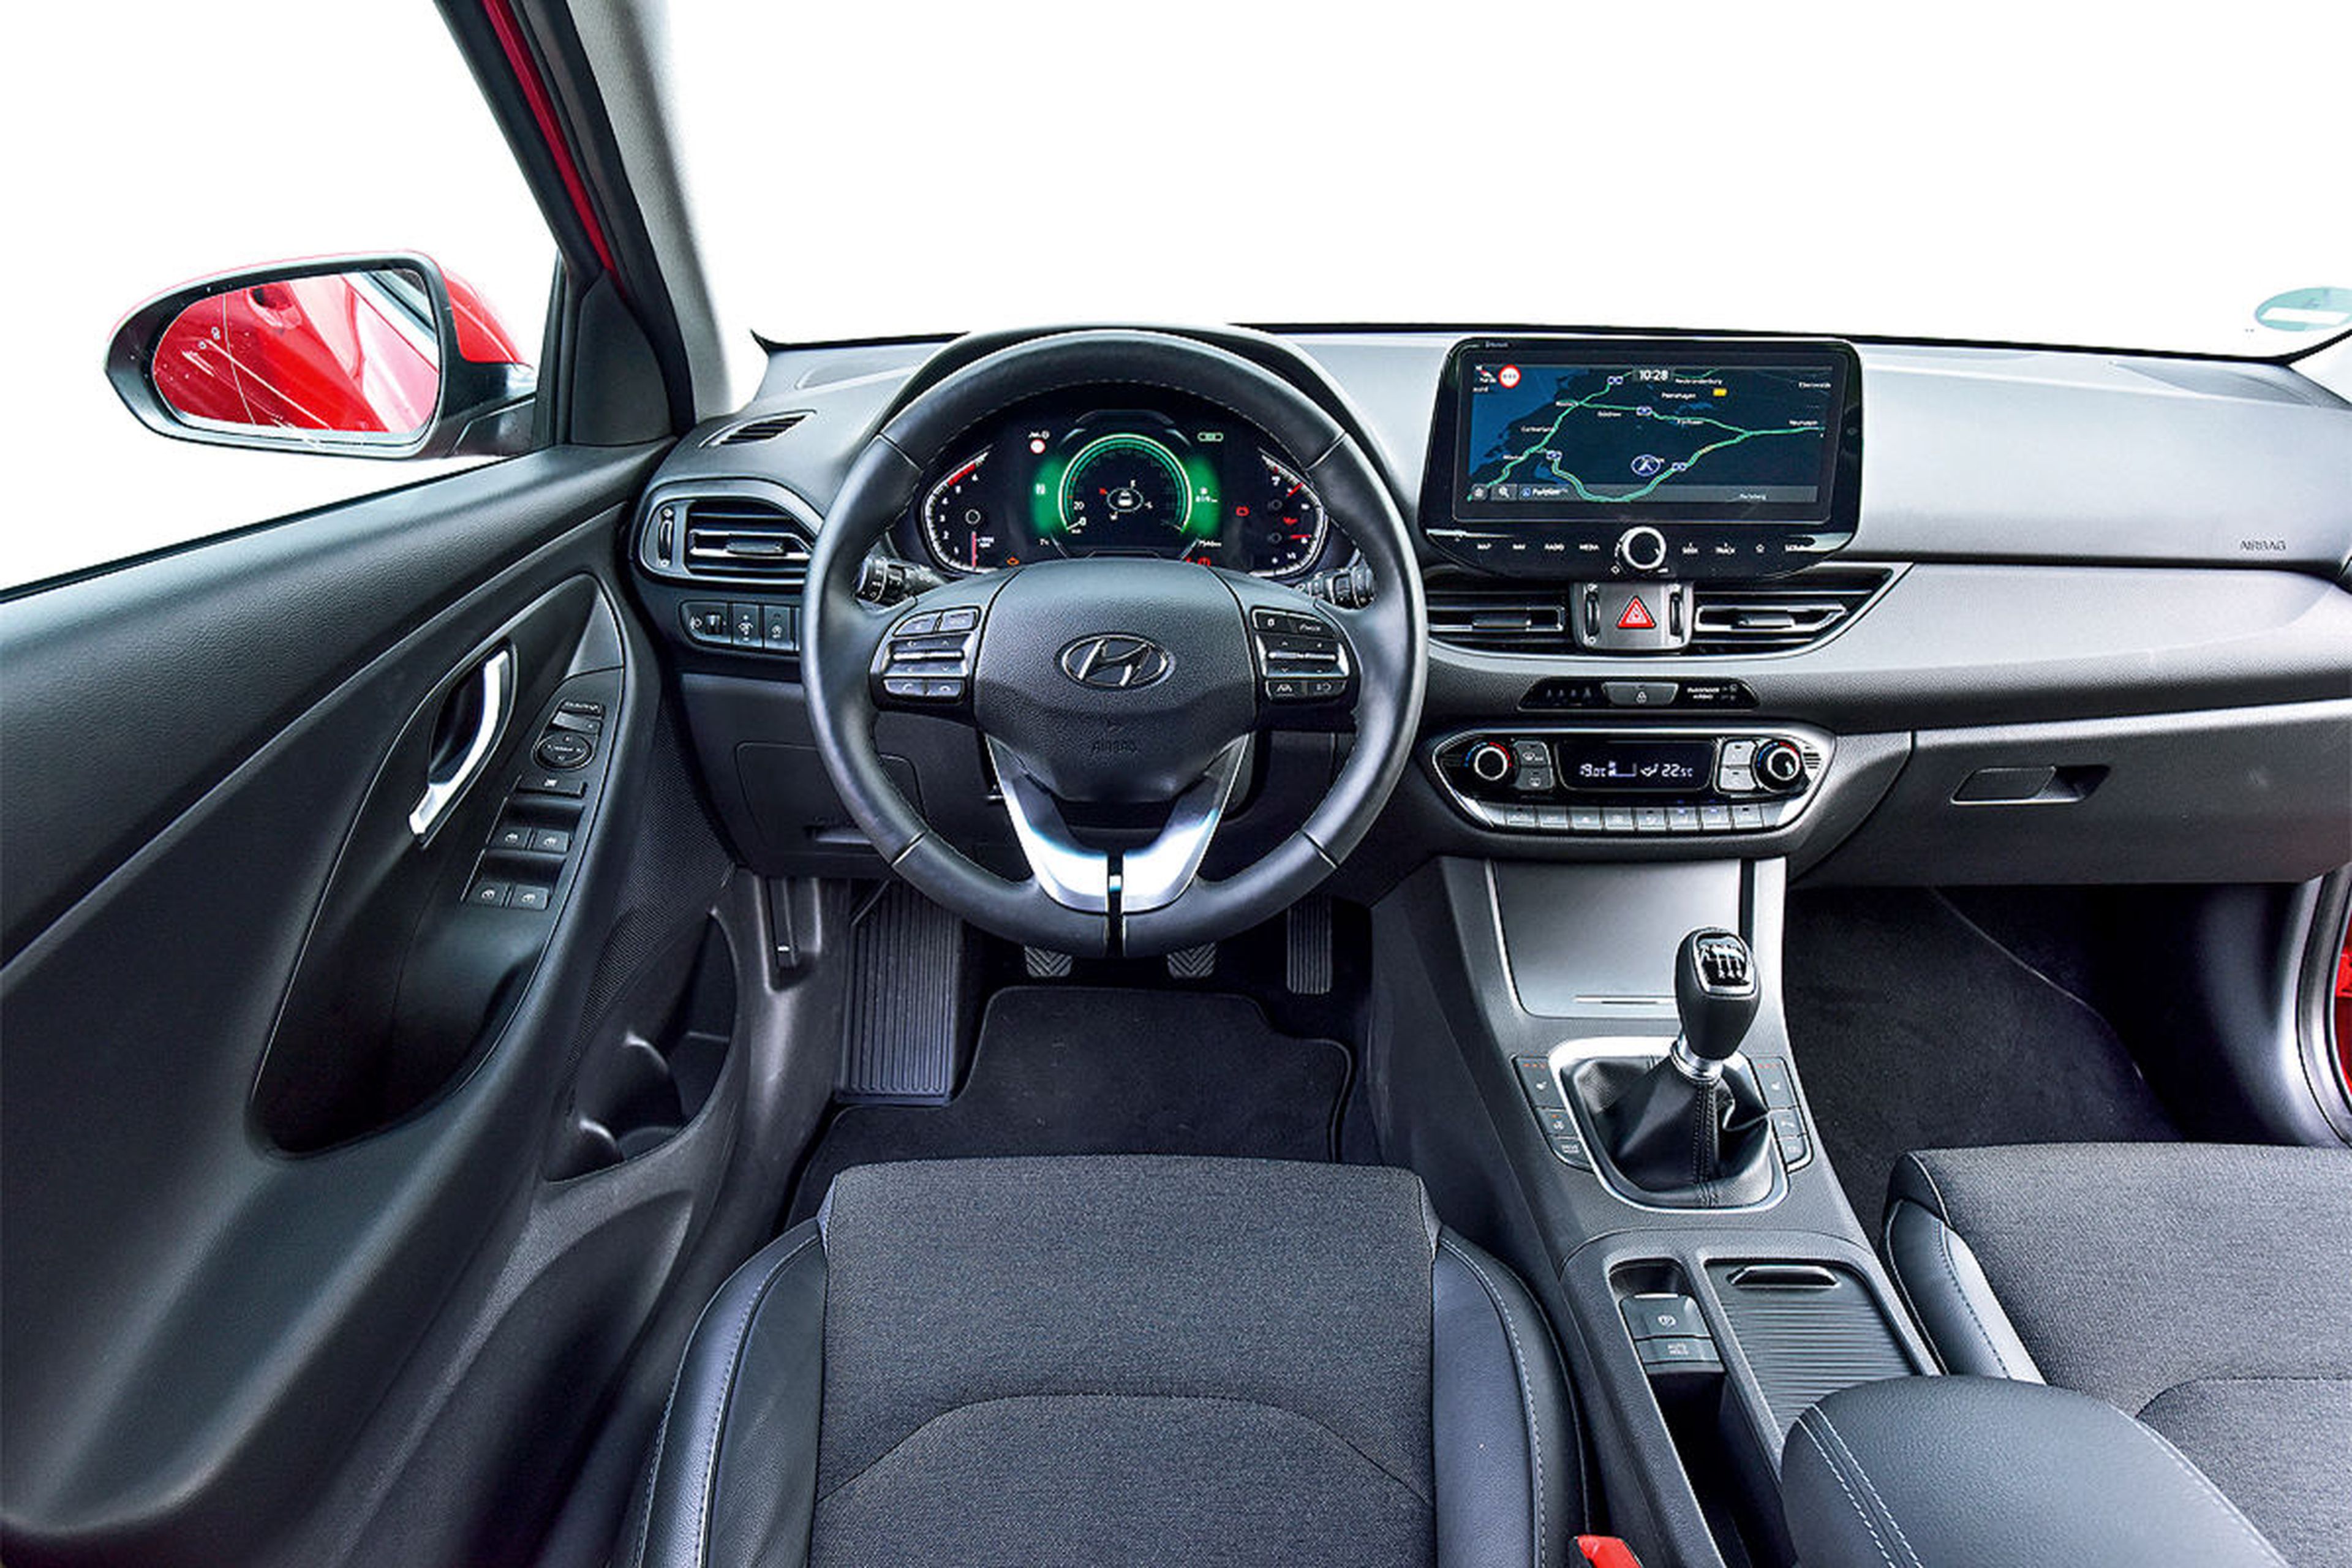 El cockpit del Hyundai tiene un manejo más intuitivo